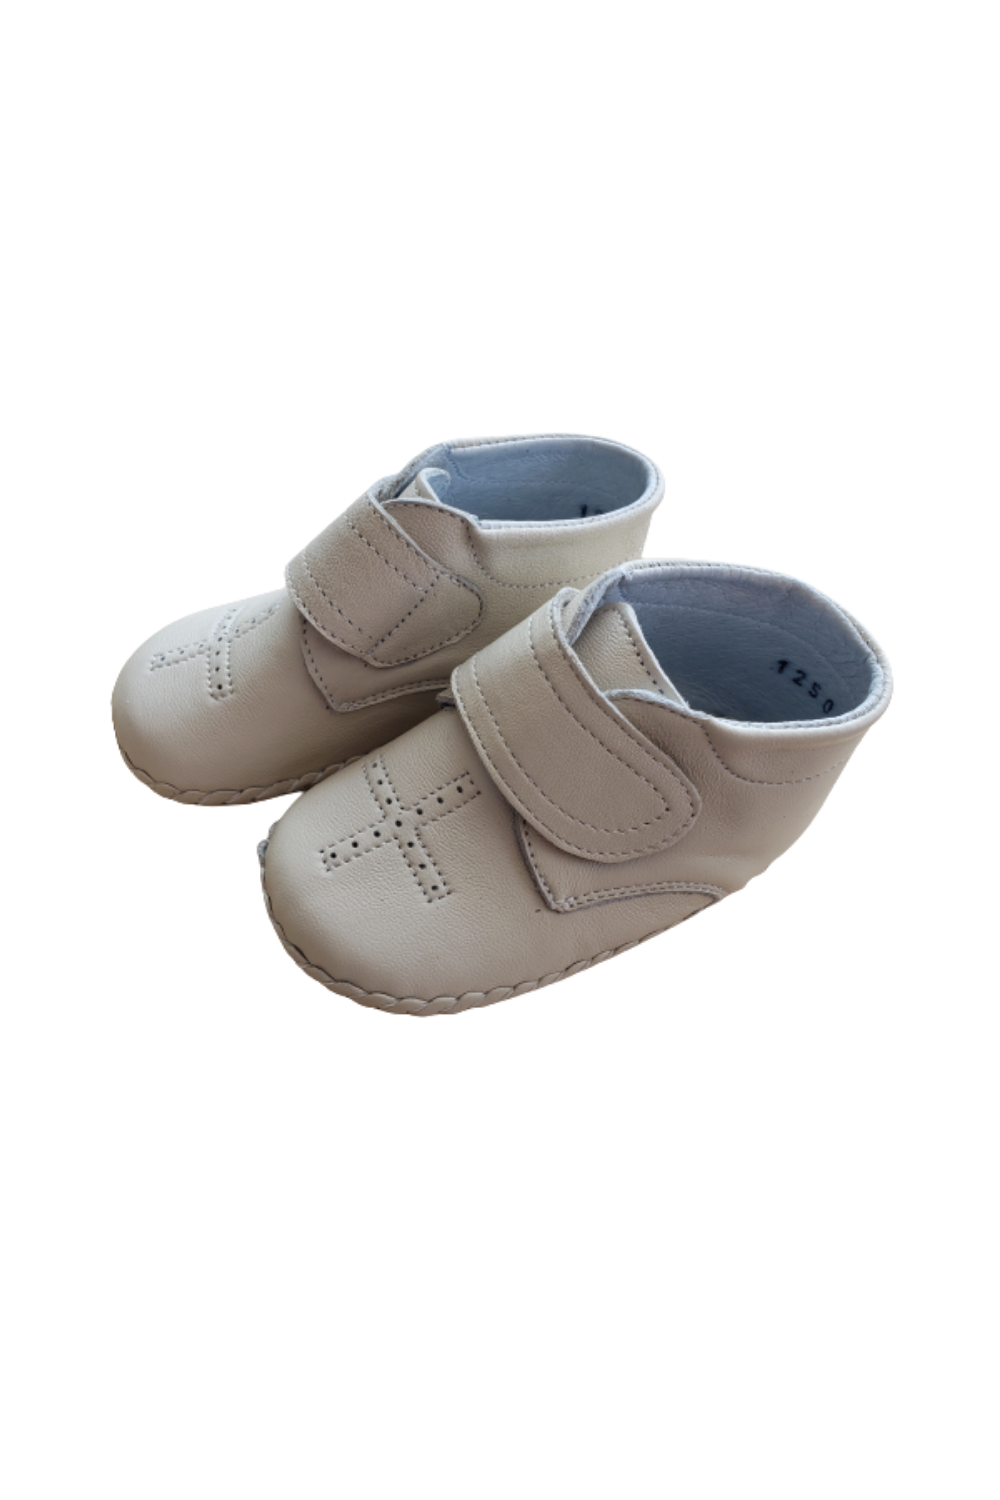 Zapato de bebé PERLA / CRUZ PUNTOS